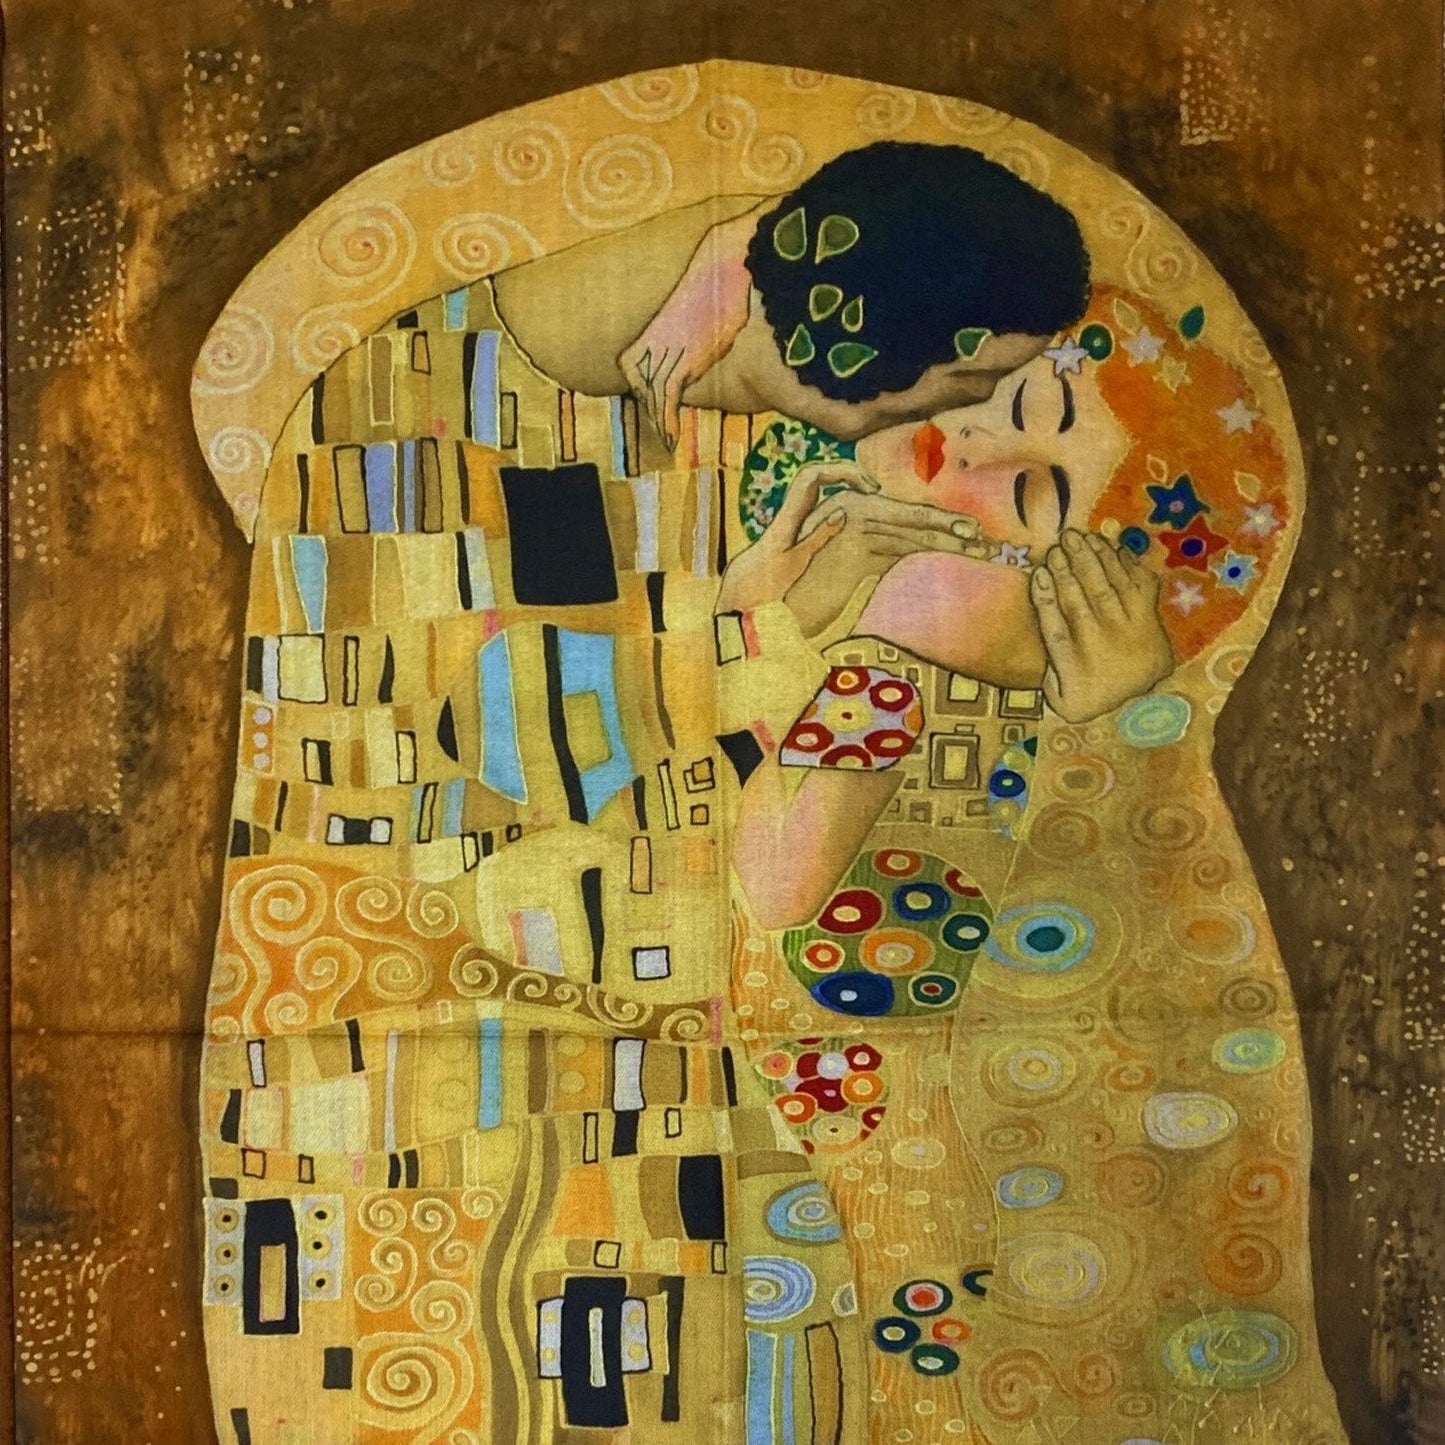 Vlnený šál-šatka, 70 cm x 180 cm, Klimt - The Kiss